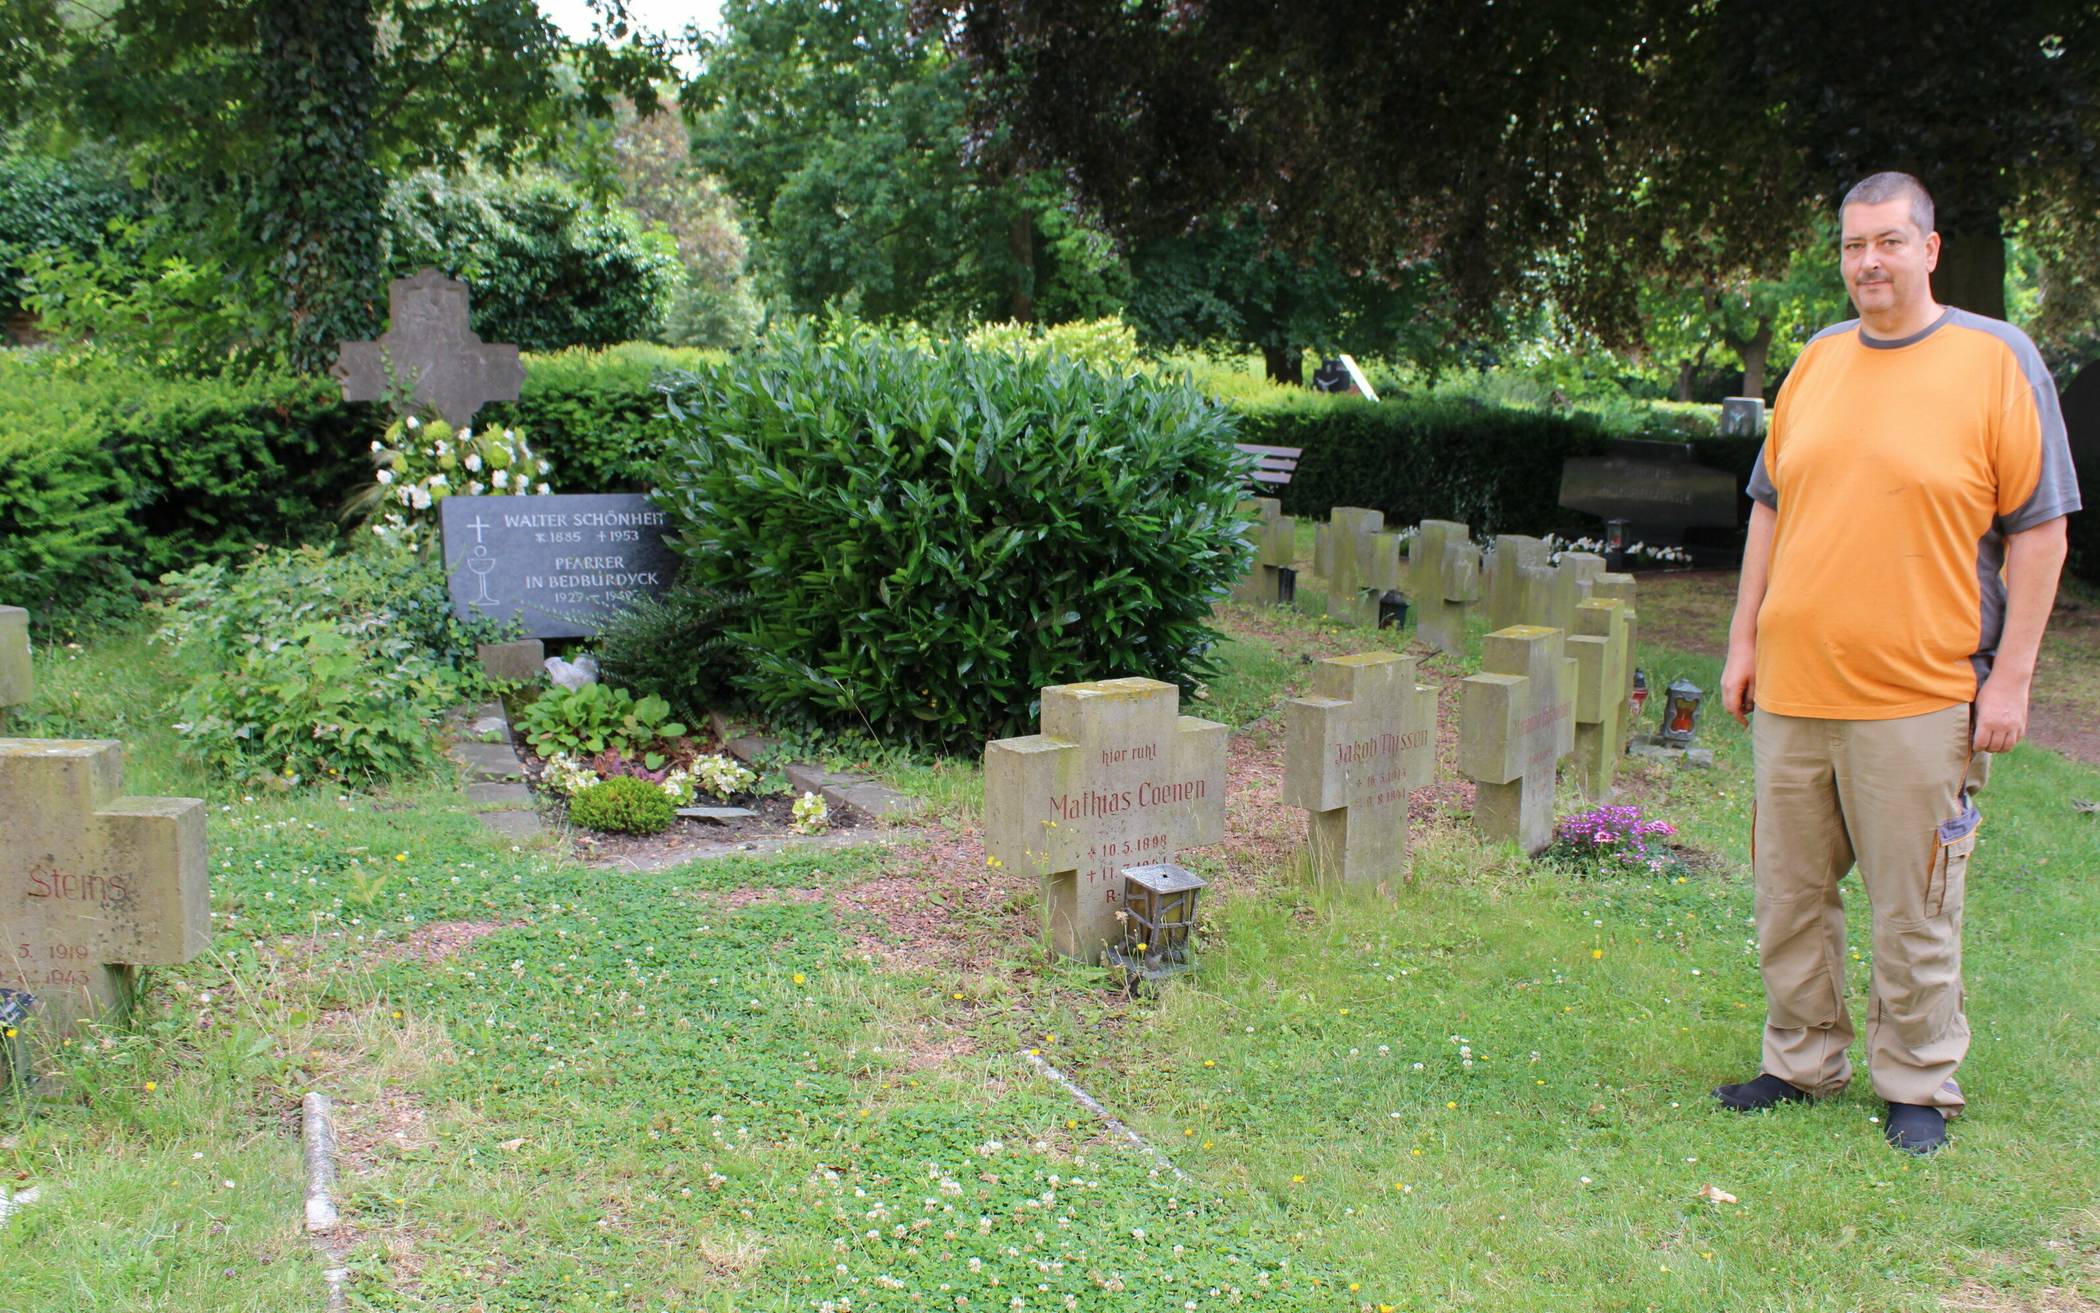 Friedhof Bedburdyck: Bald soll saniert werden